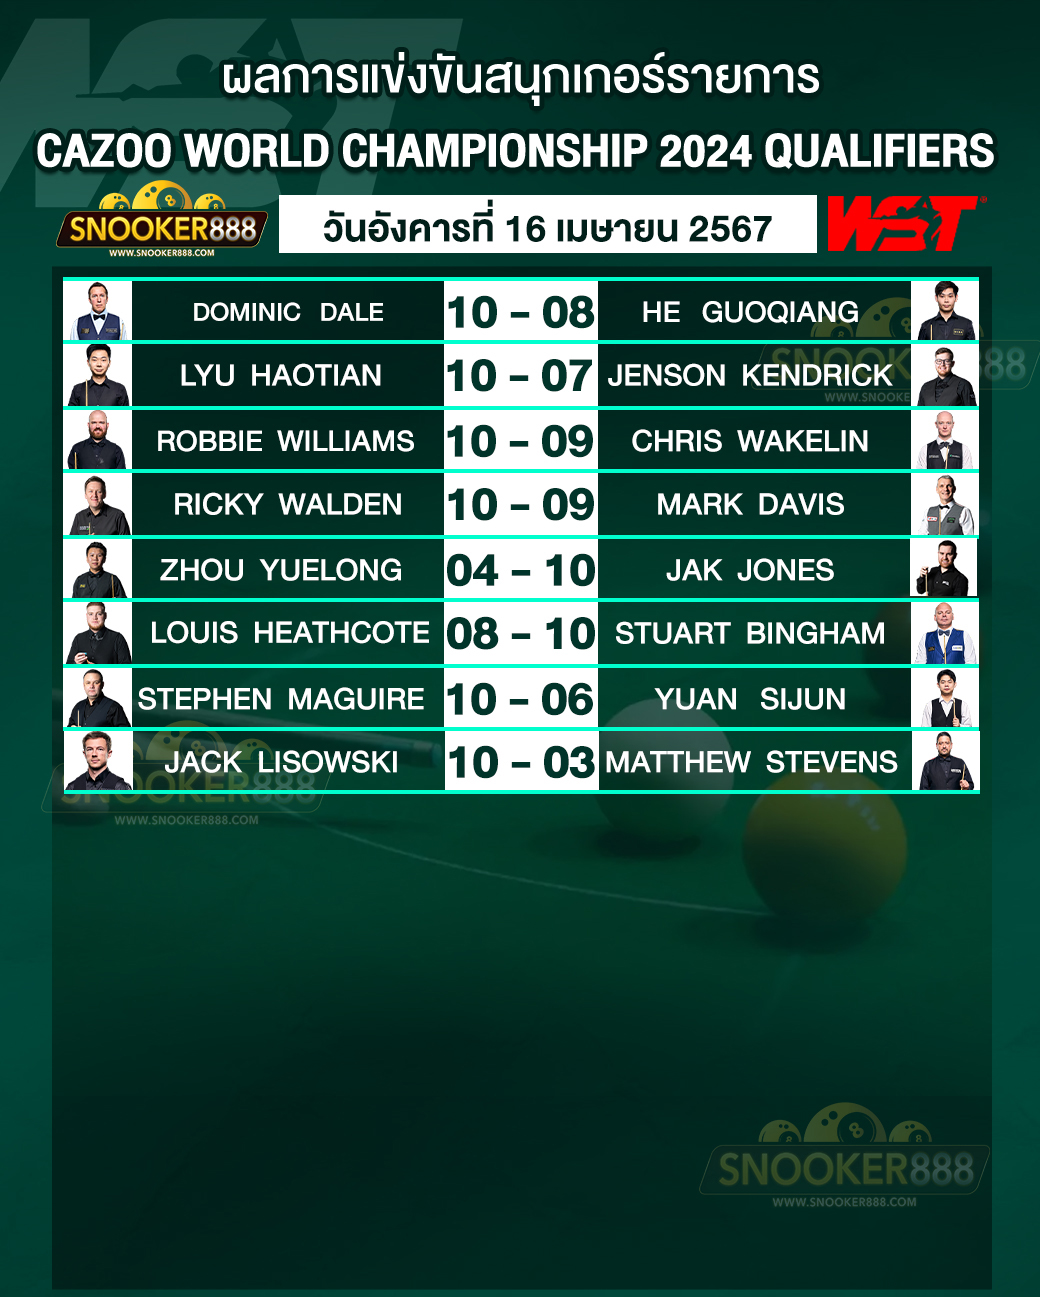 ผลการแข่งขันสนุกเกอร์ CAZOO WORLD CHAMPIONSHIP 2024 QUALIFIERS วันที่ 16 เม.ย. 67